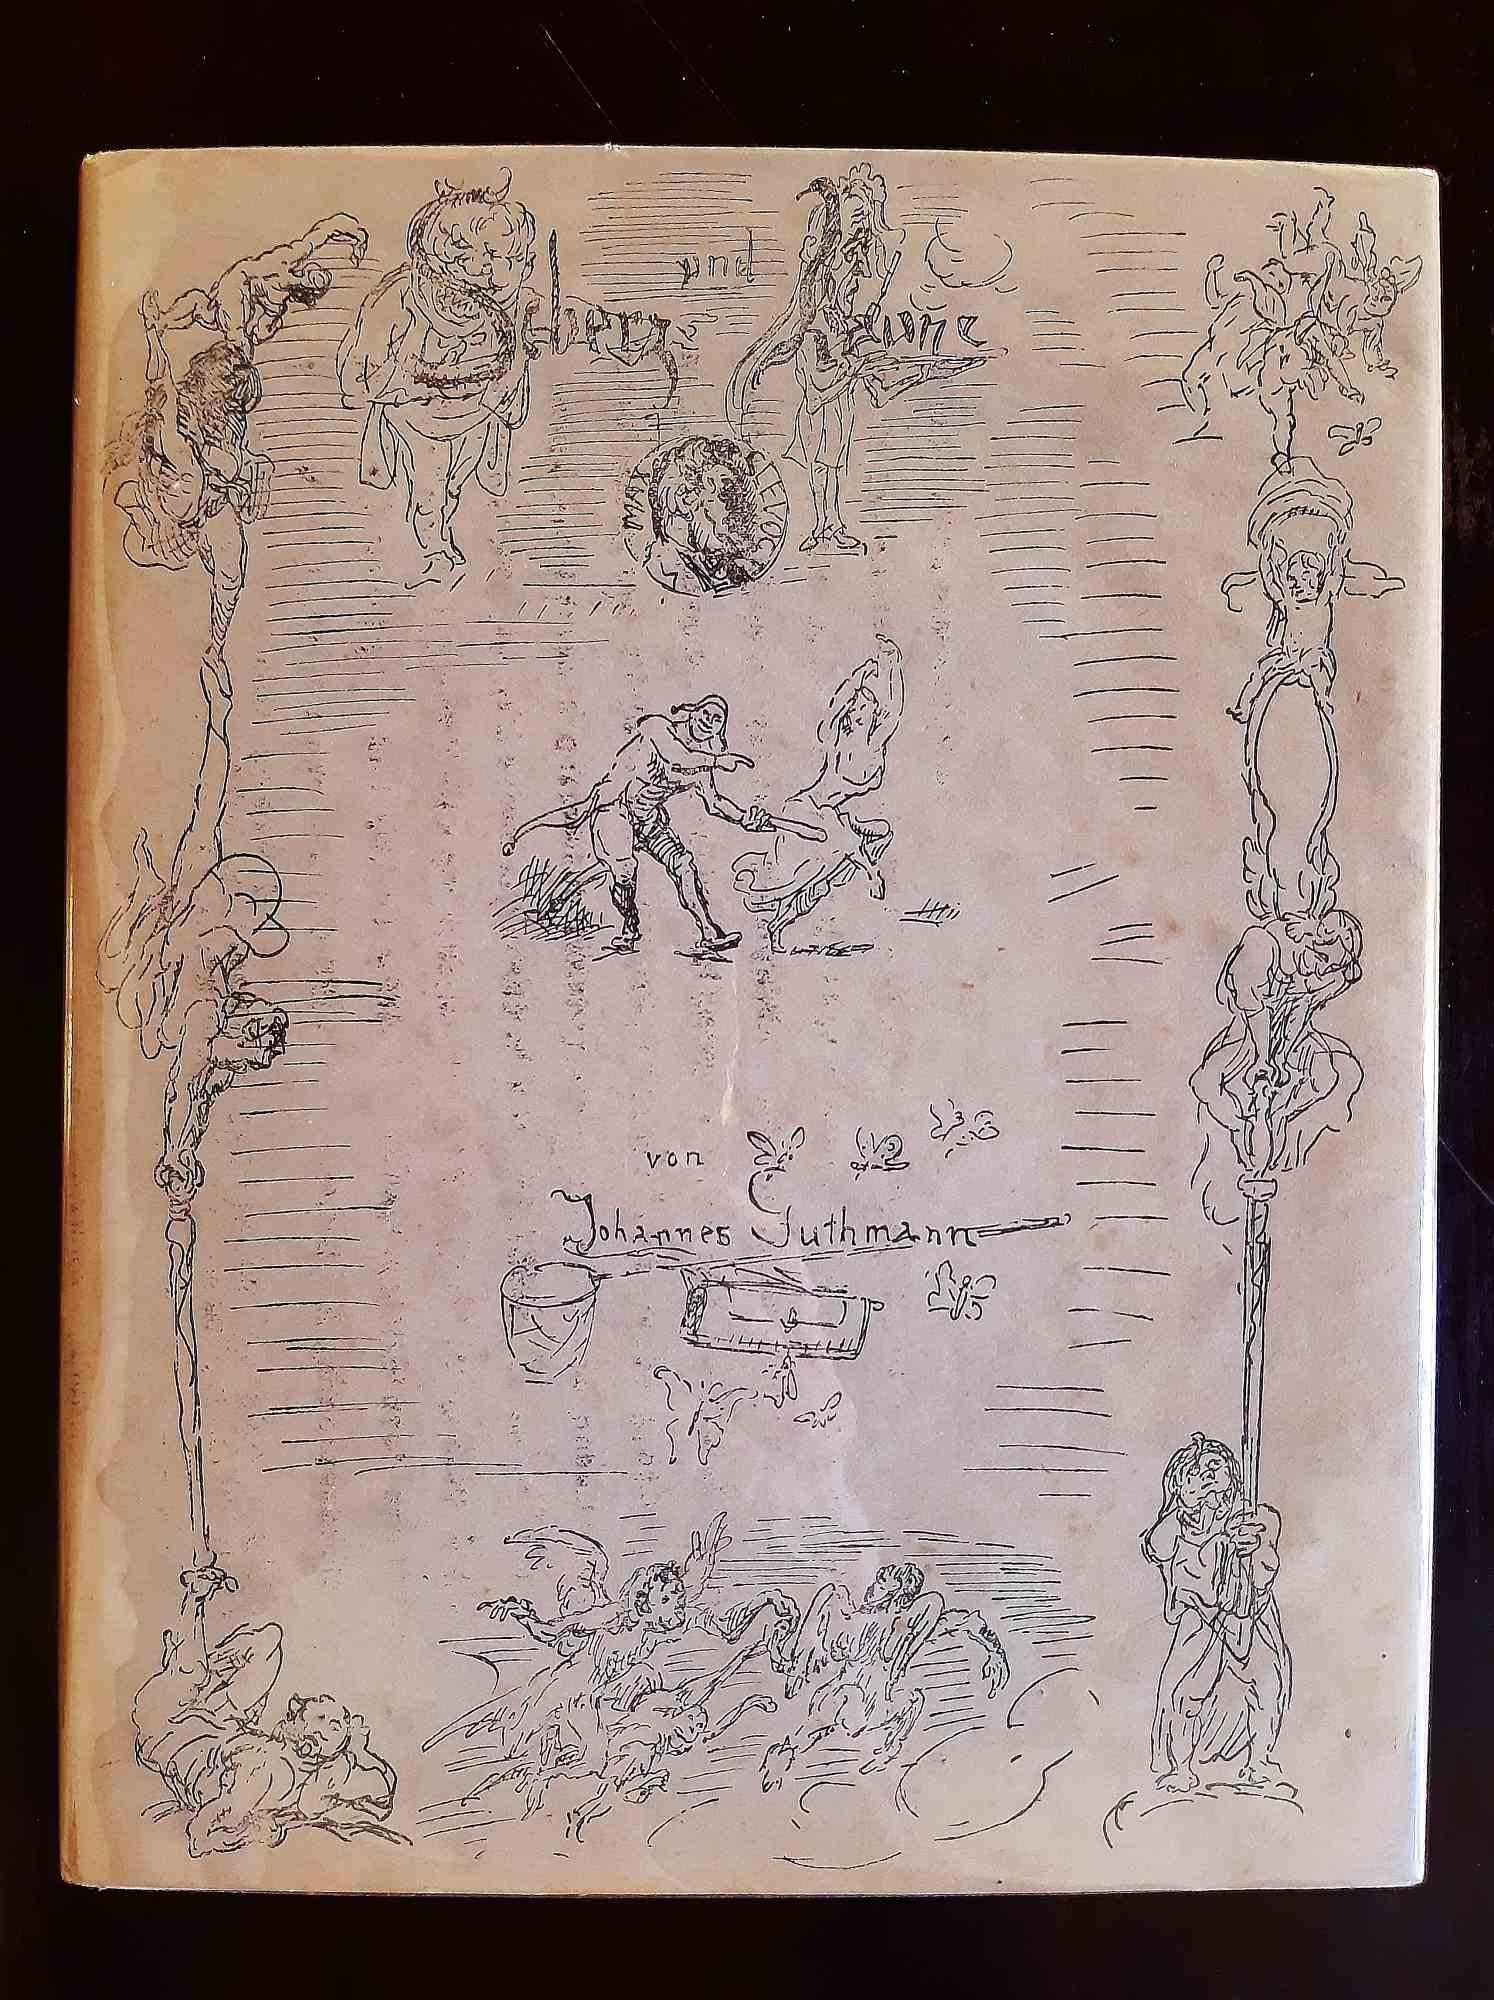 Scherz und Laune - Rare Book Illustrated by Léon Spilliaert - 1920 1